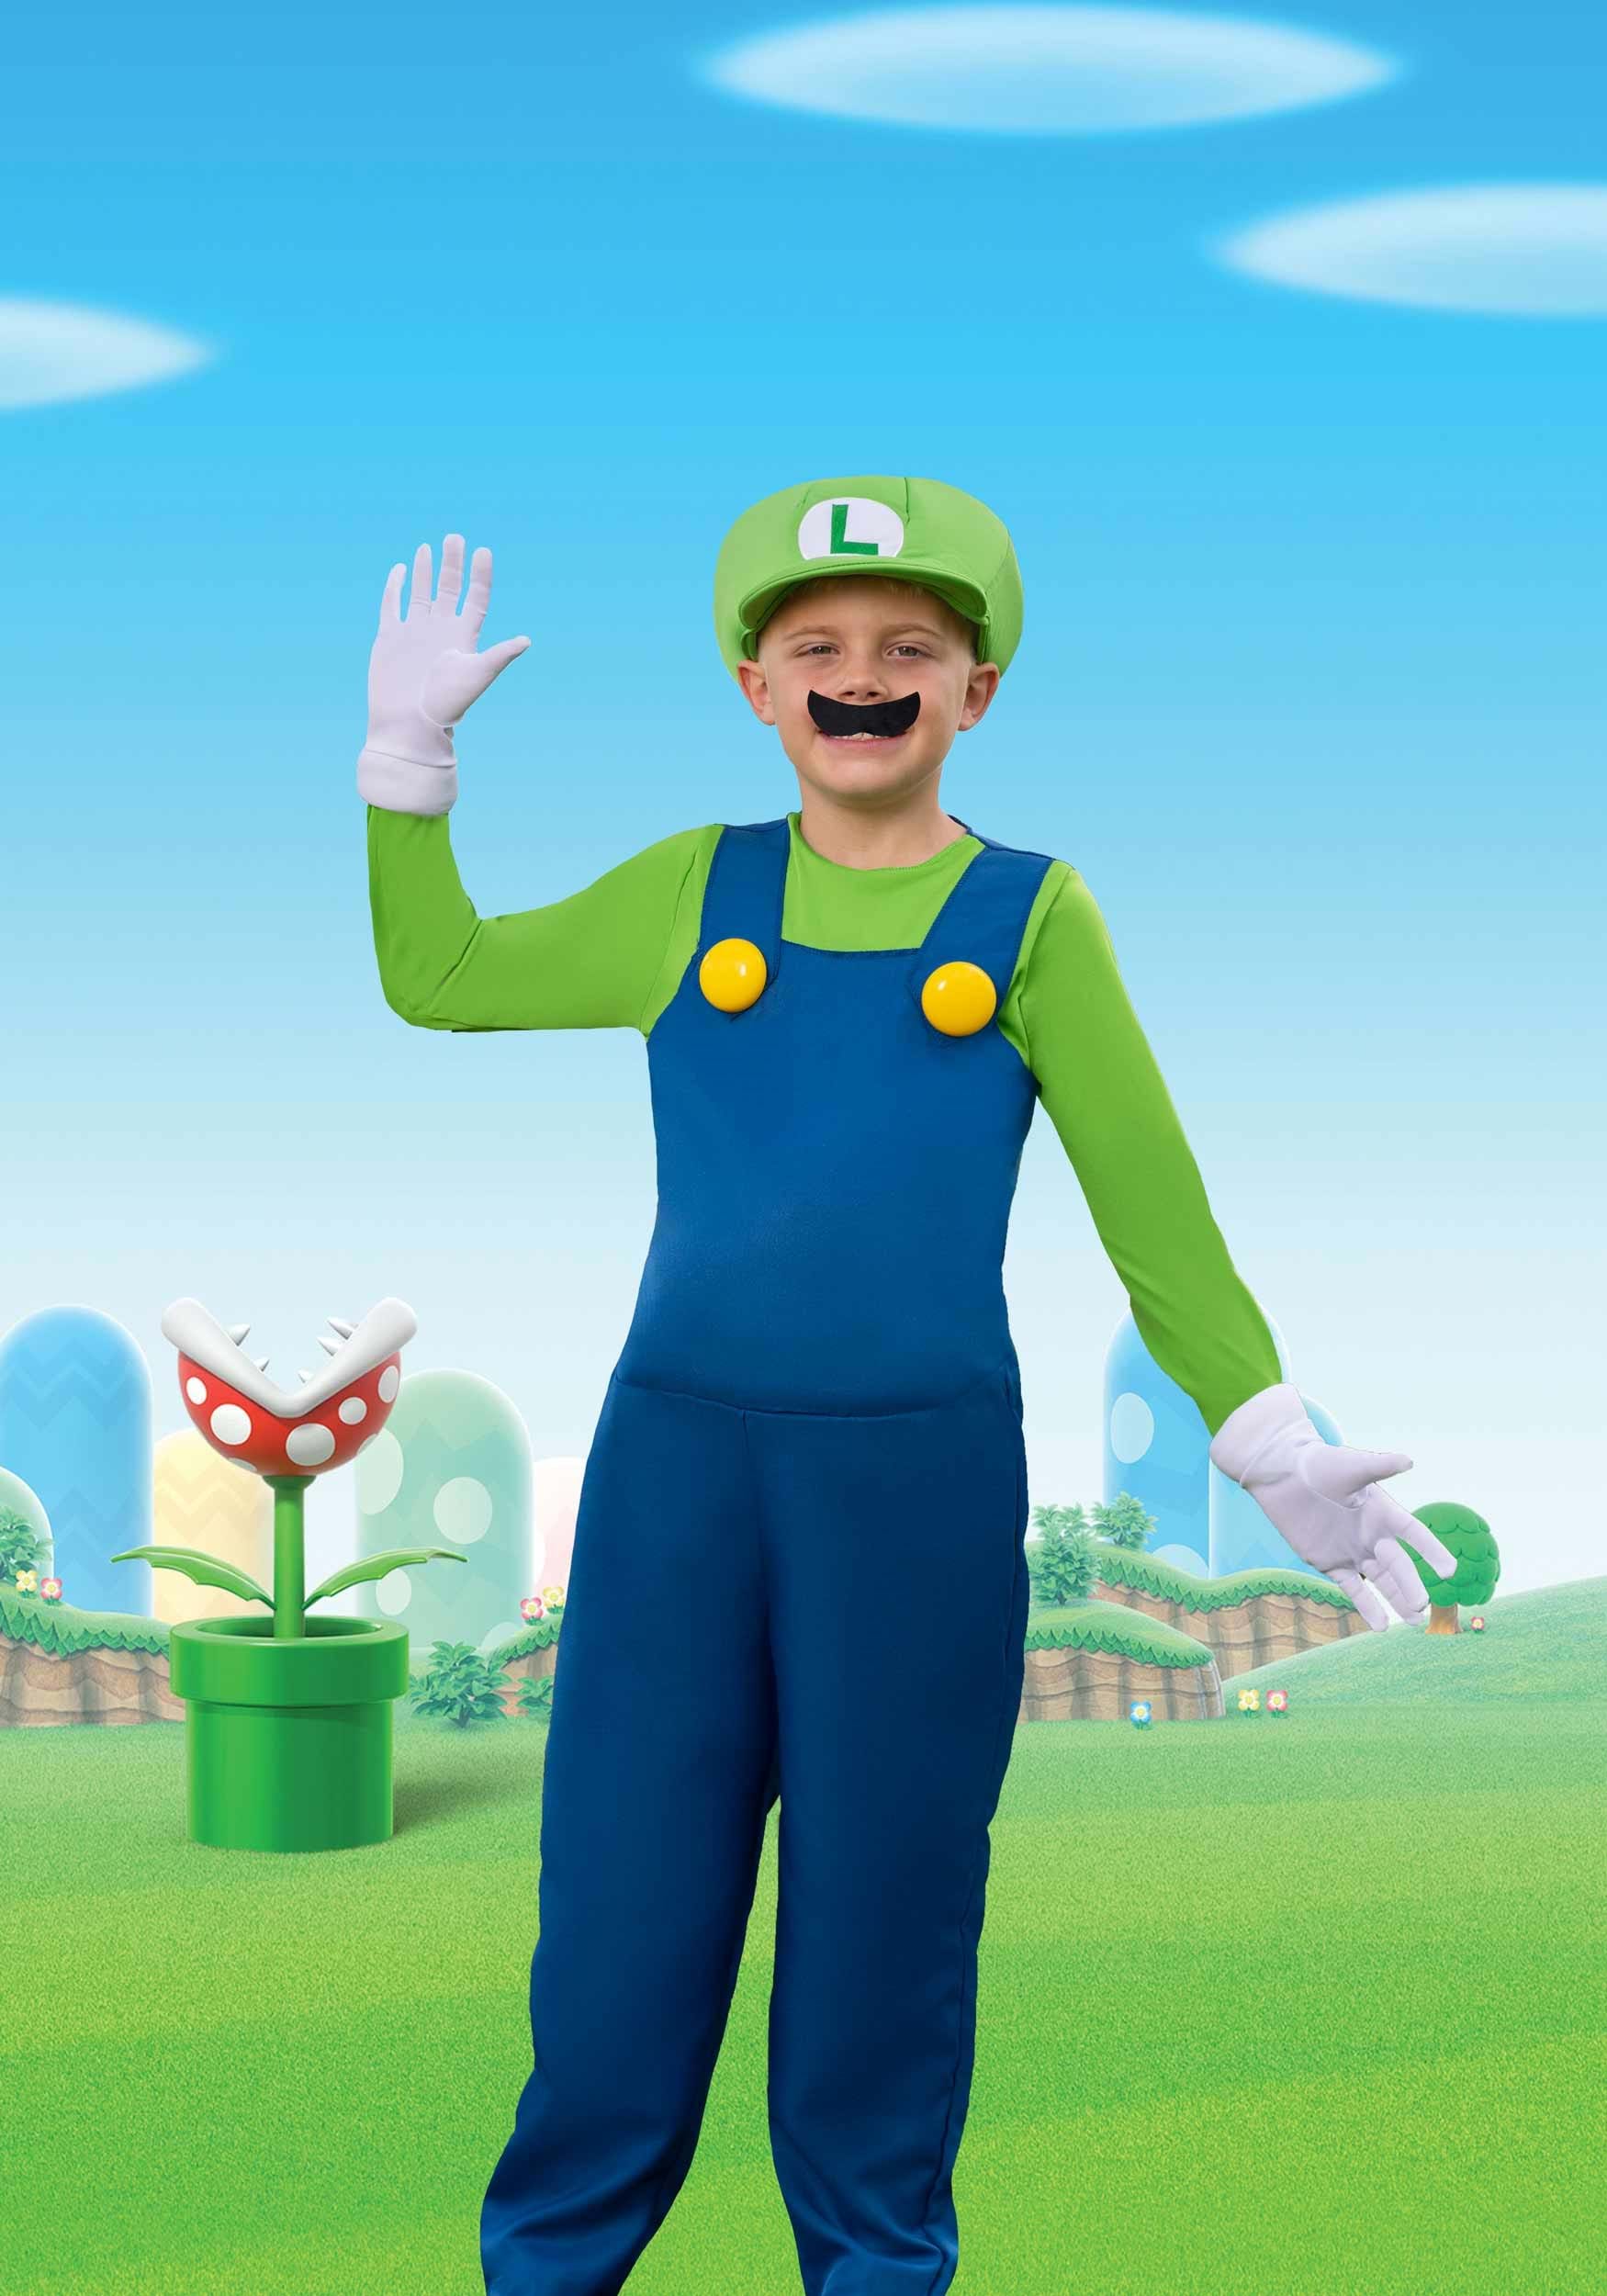 Luigi Plush white and green outfit